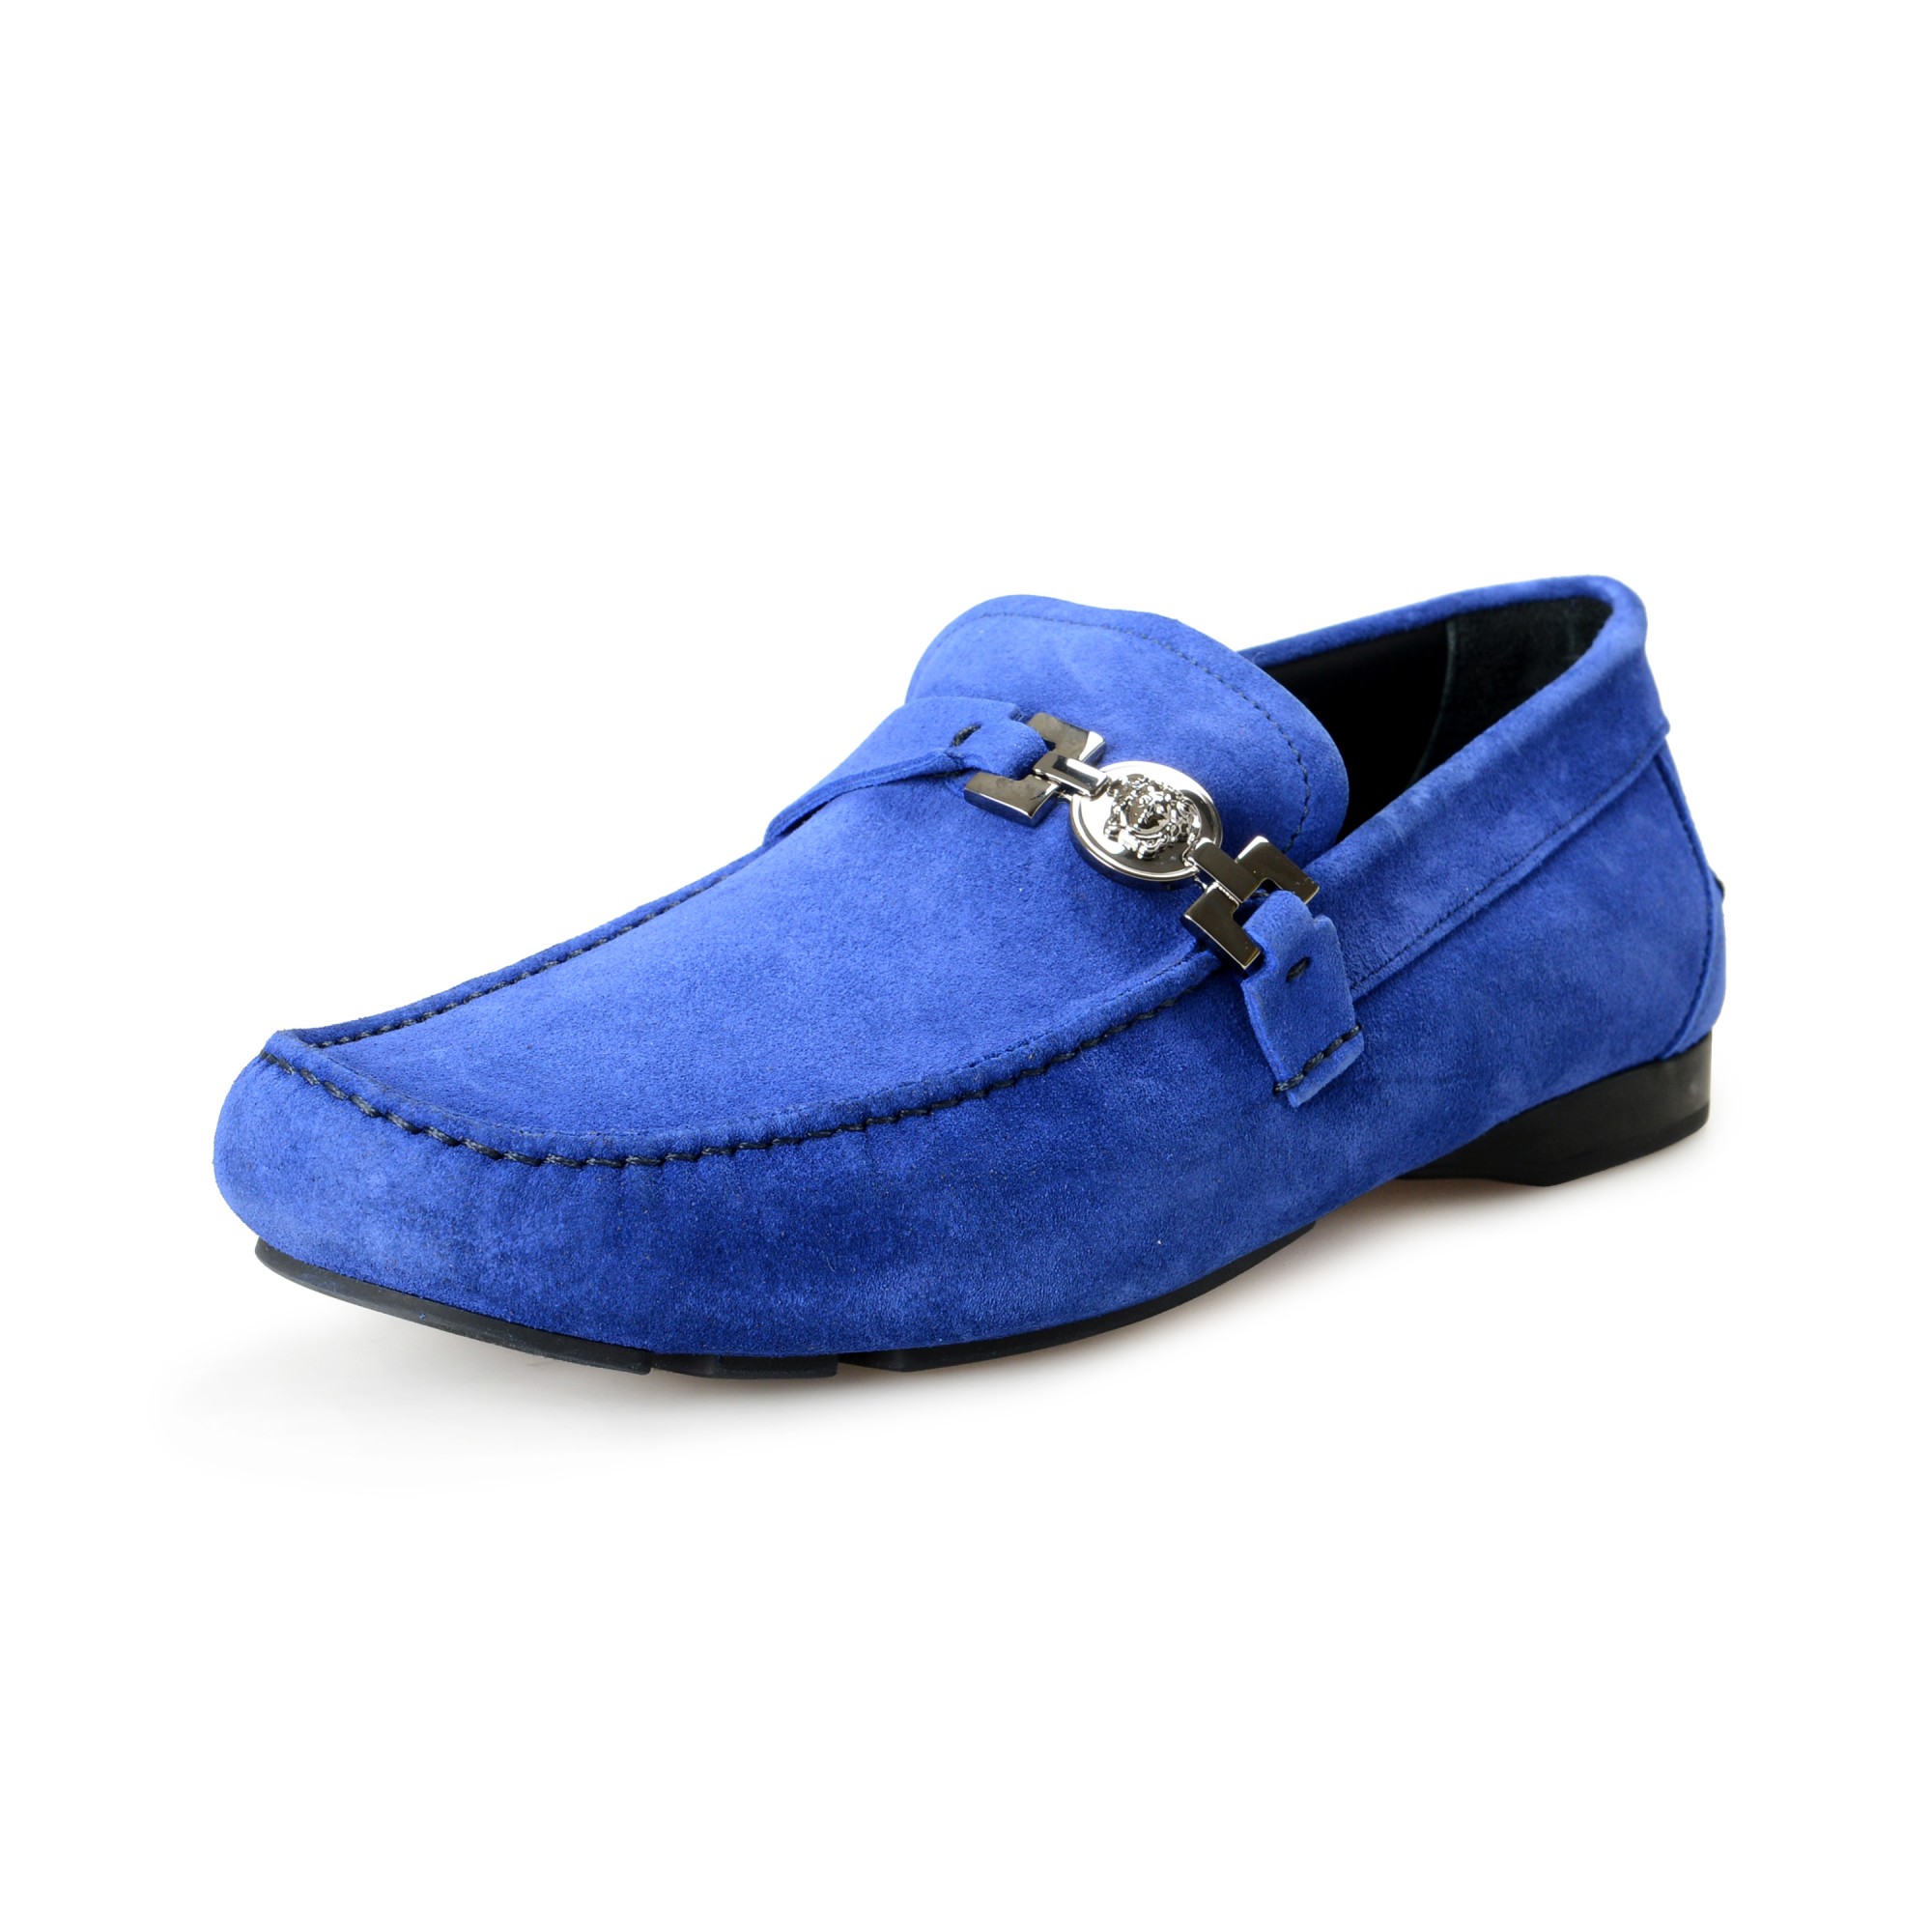 vægt Gnide En skønne dag Versace Men's Blue Suede Leather Slip On Loafers Moccasins Shoes